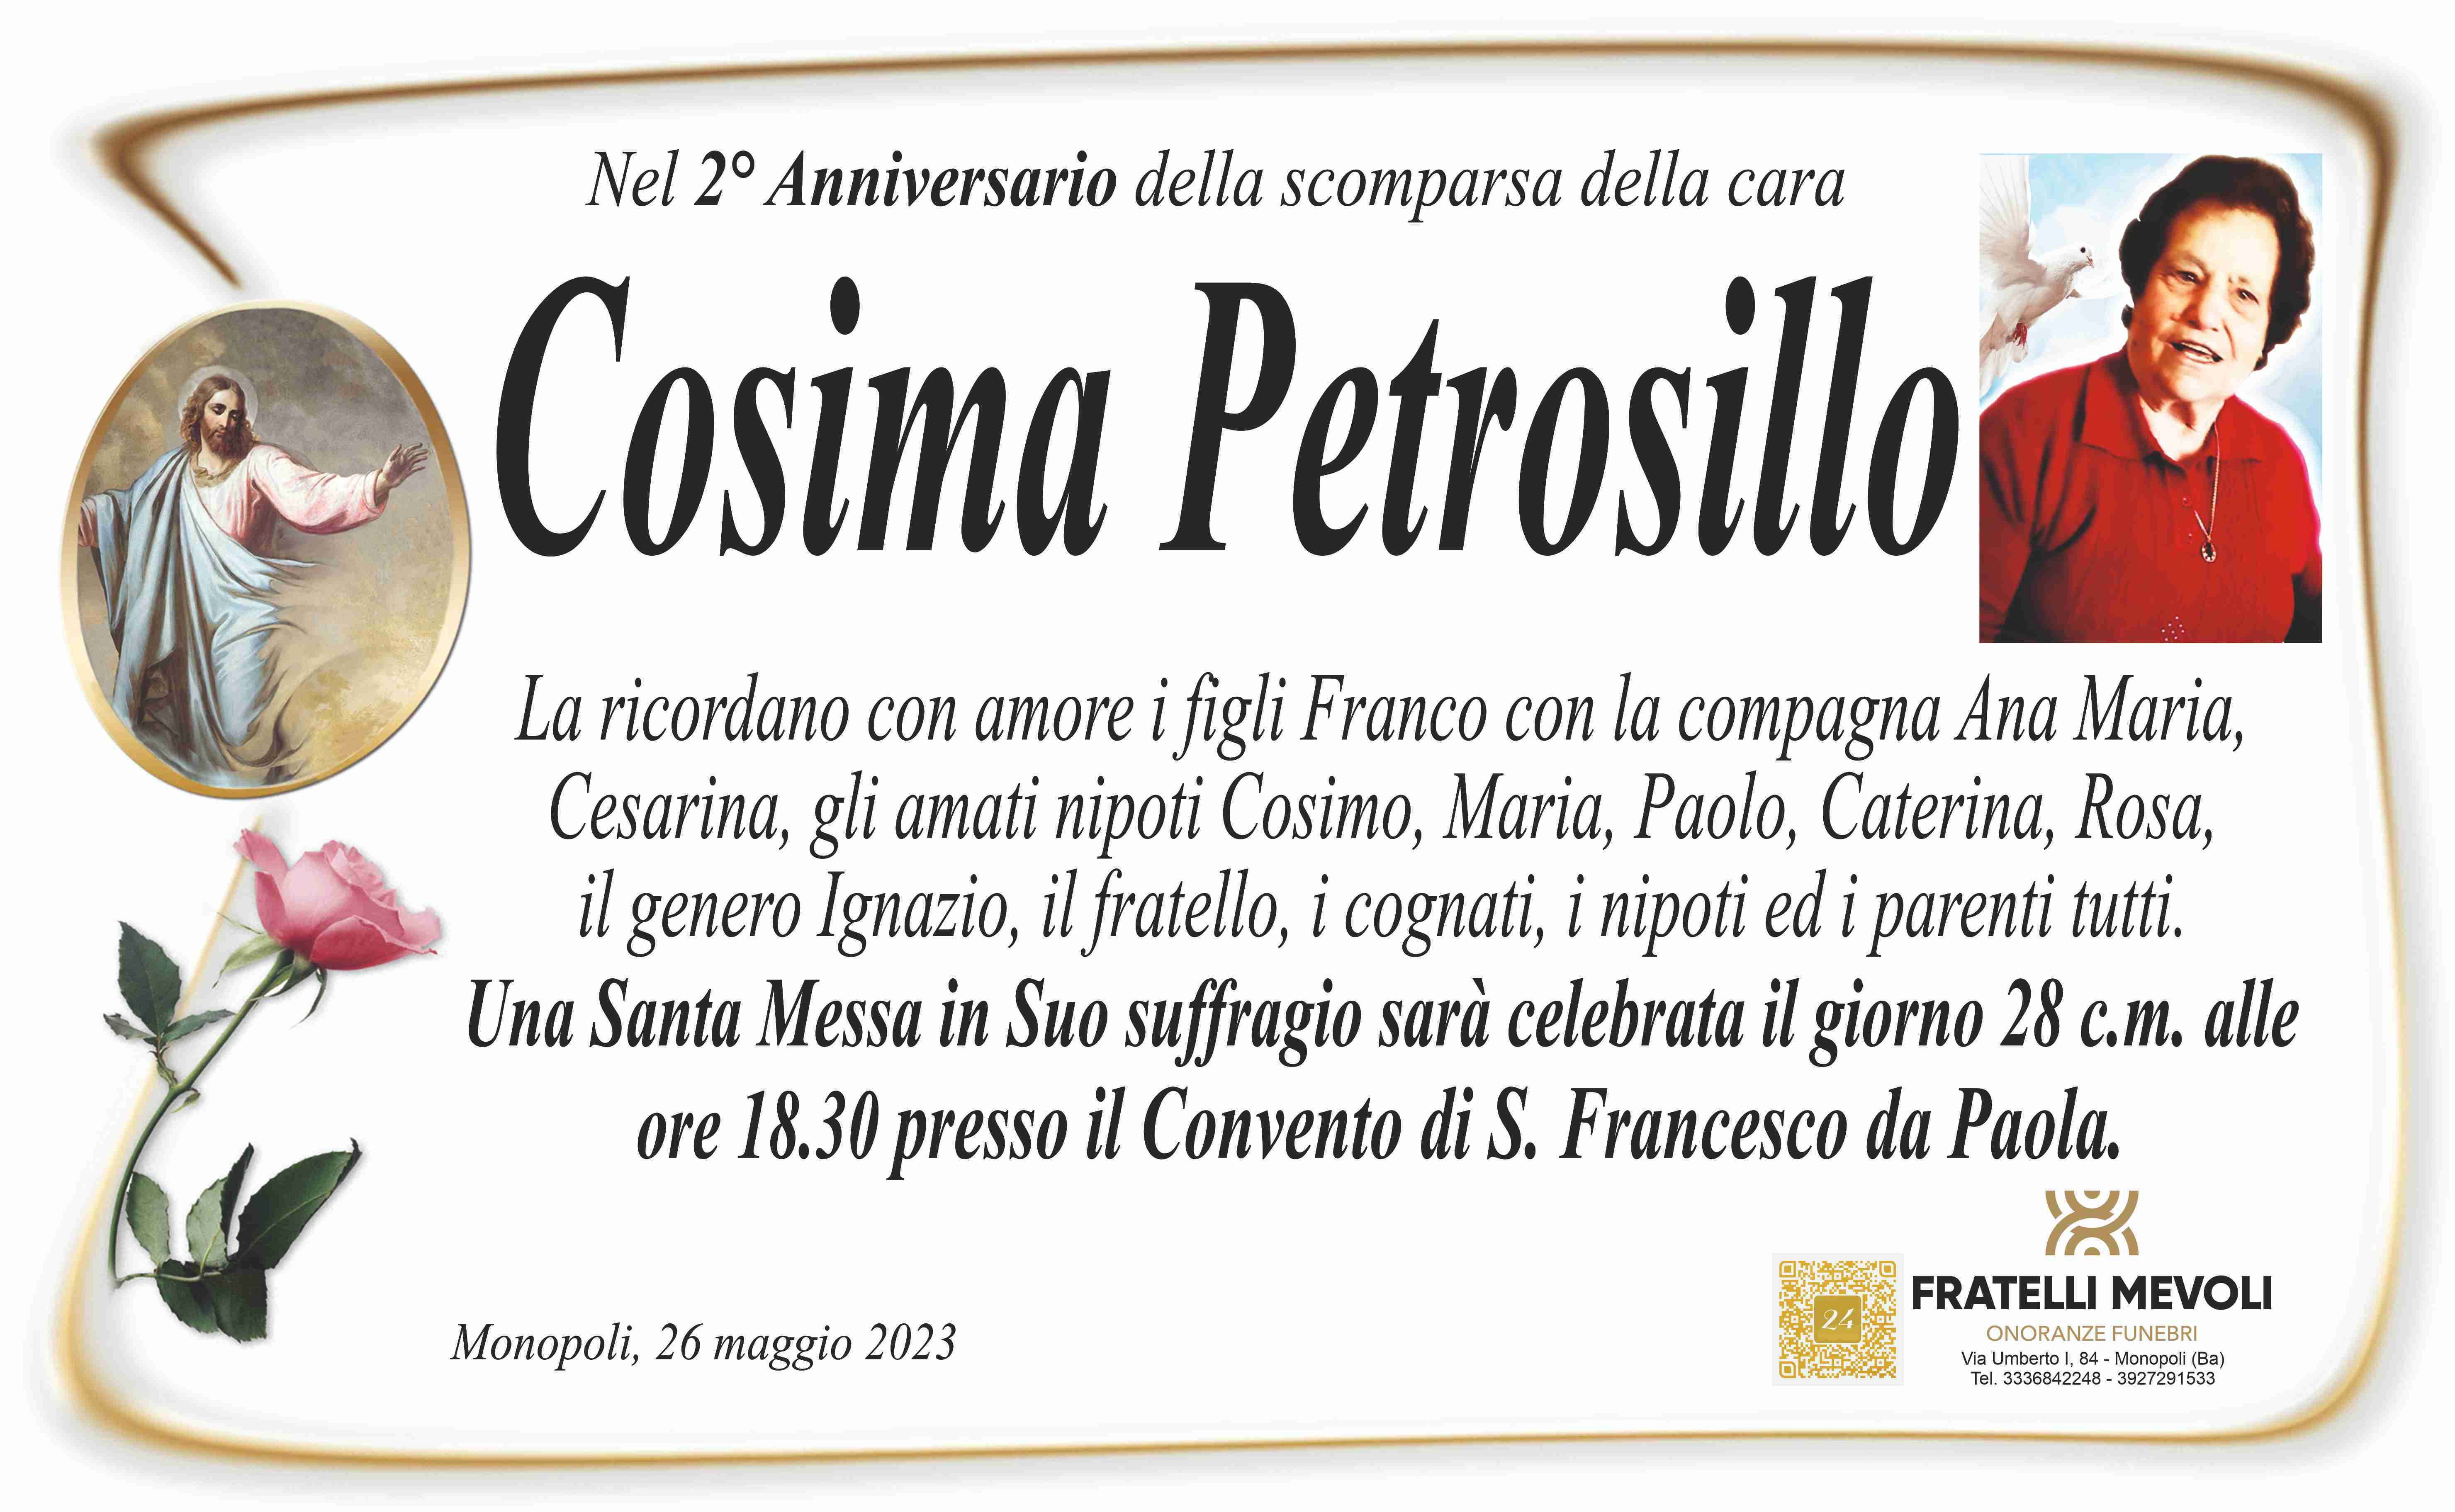 Cosima Petrosillo